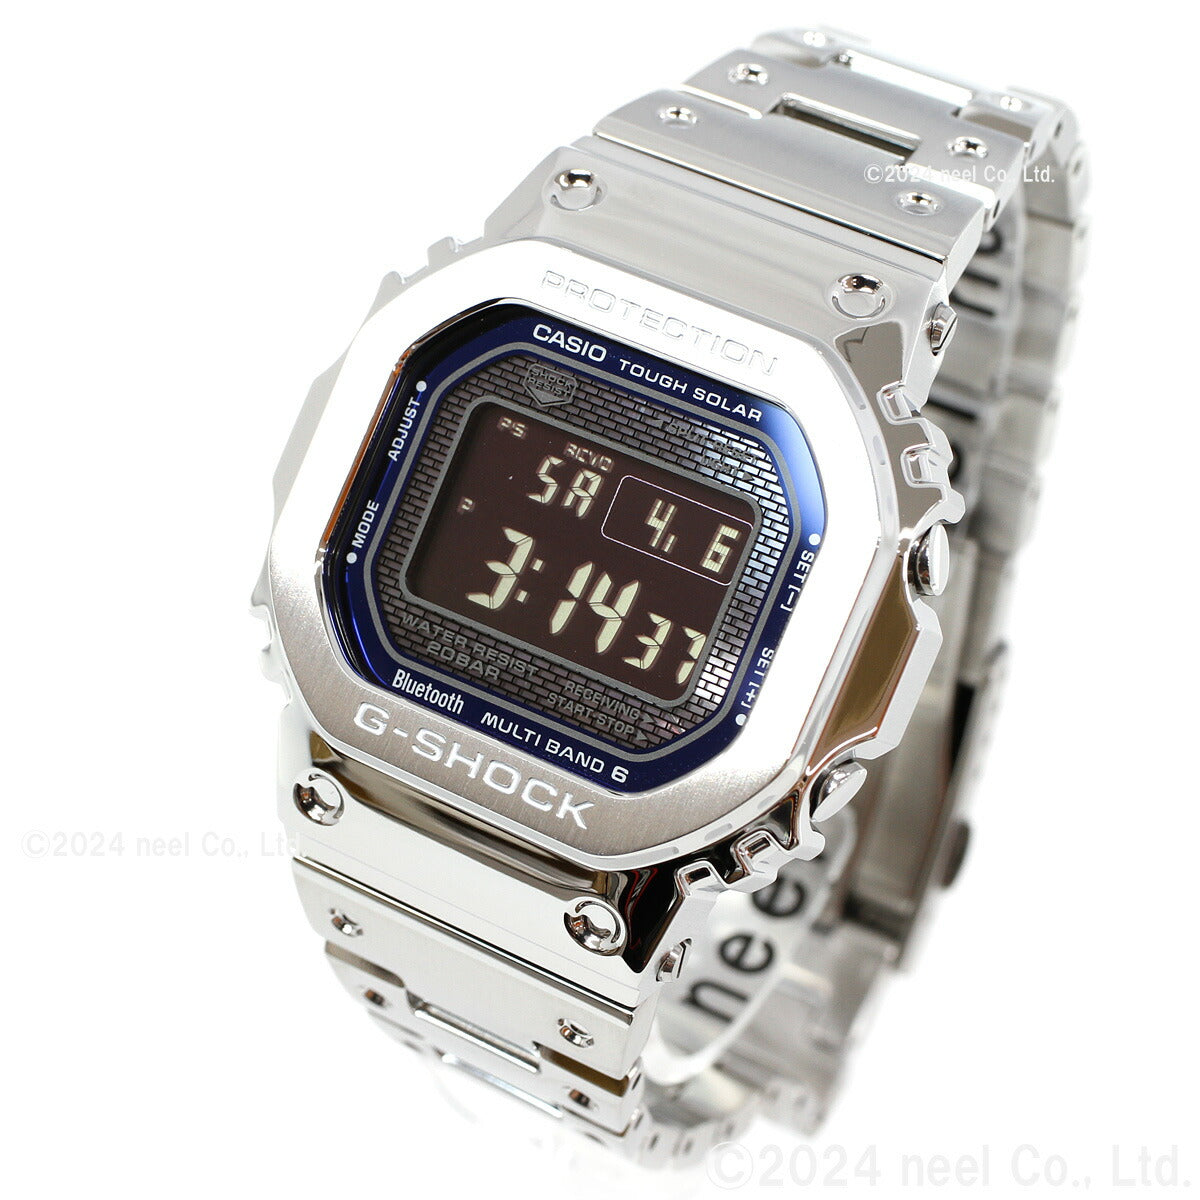 メンズCASIO G-SHOCK GMW-B5000 フルメタル タフソーラー 腕時計